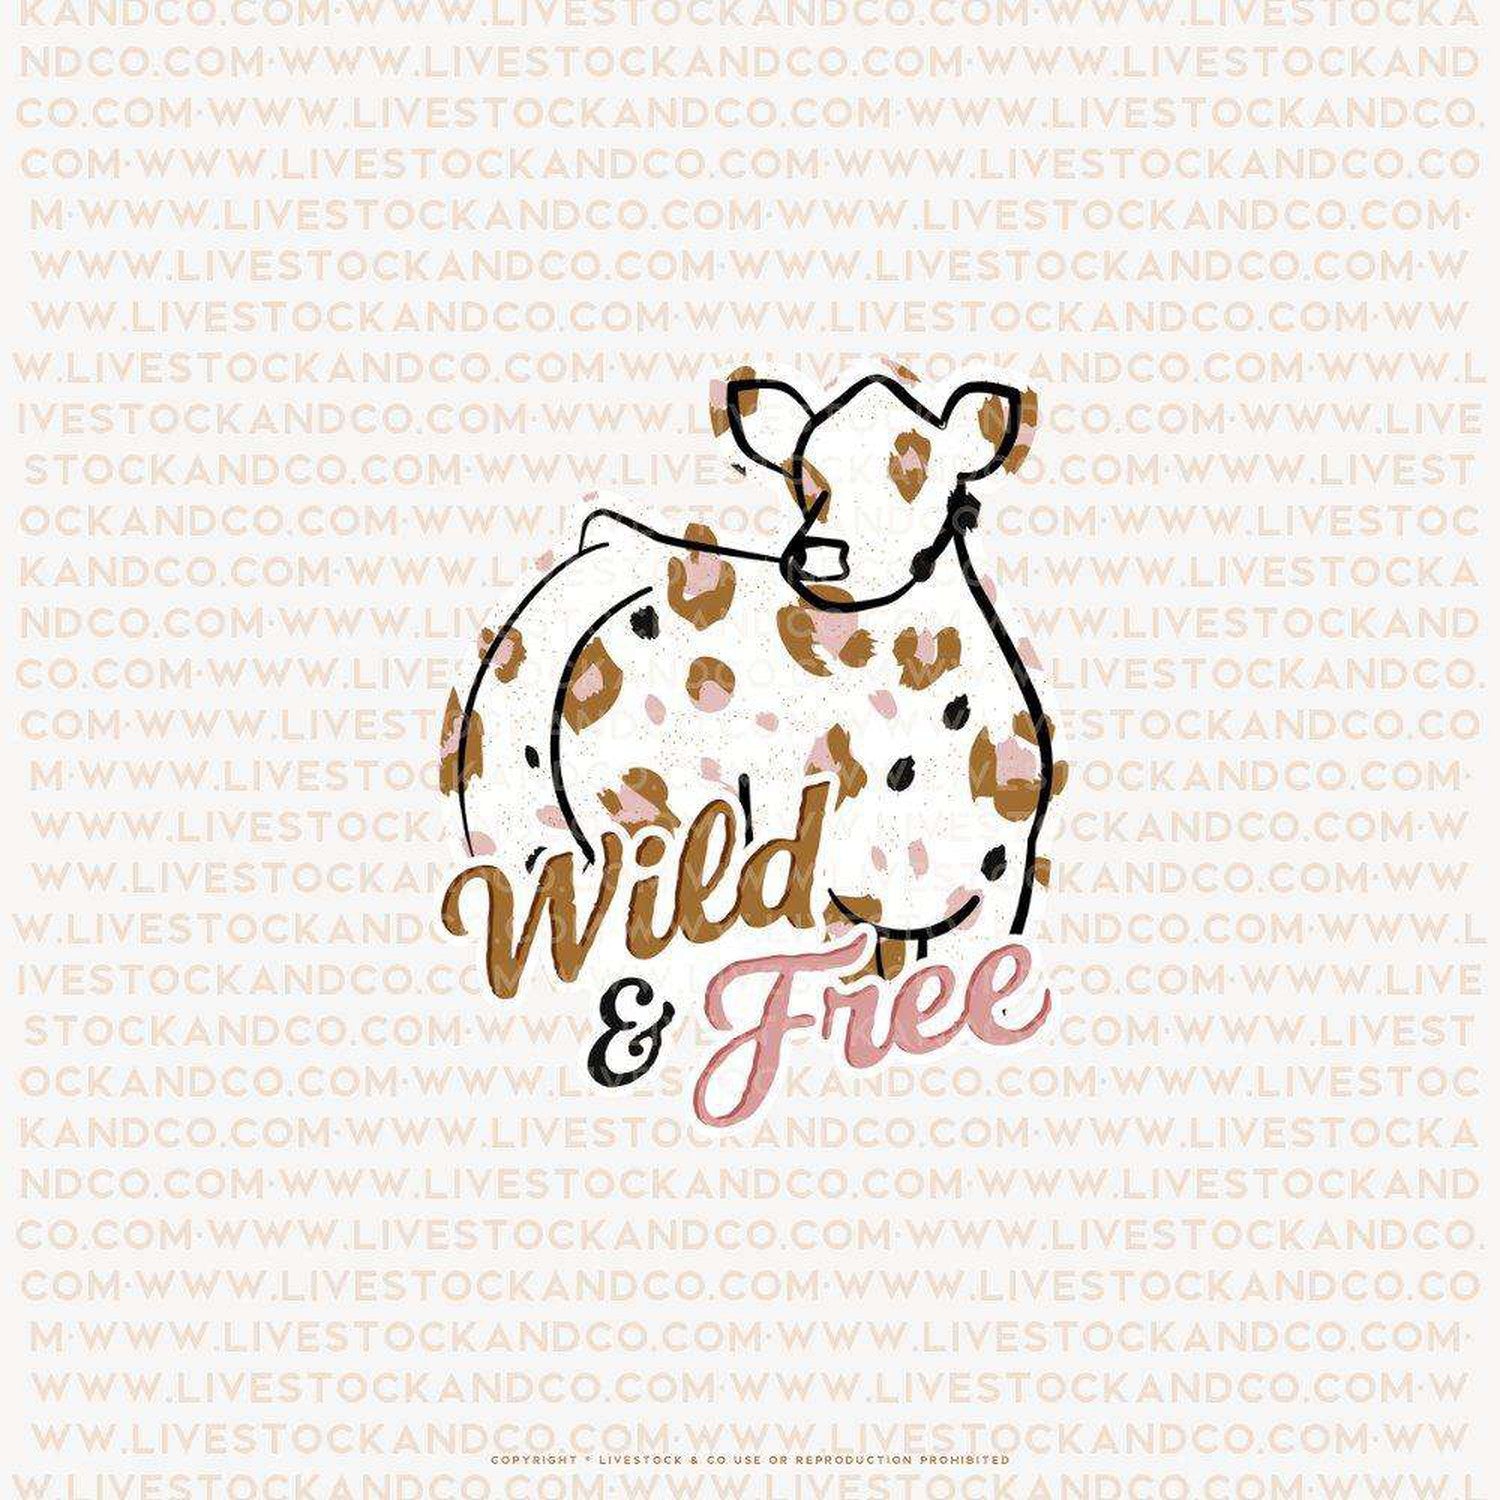 Custom Made Wild & Free Livestock Stickers Stock Show Livestock - Livestock &amp; Co. Boutique